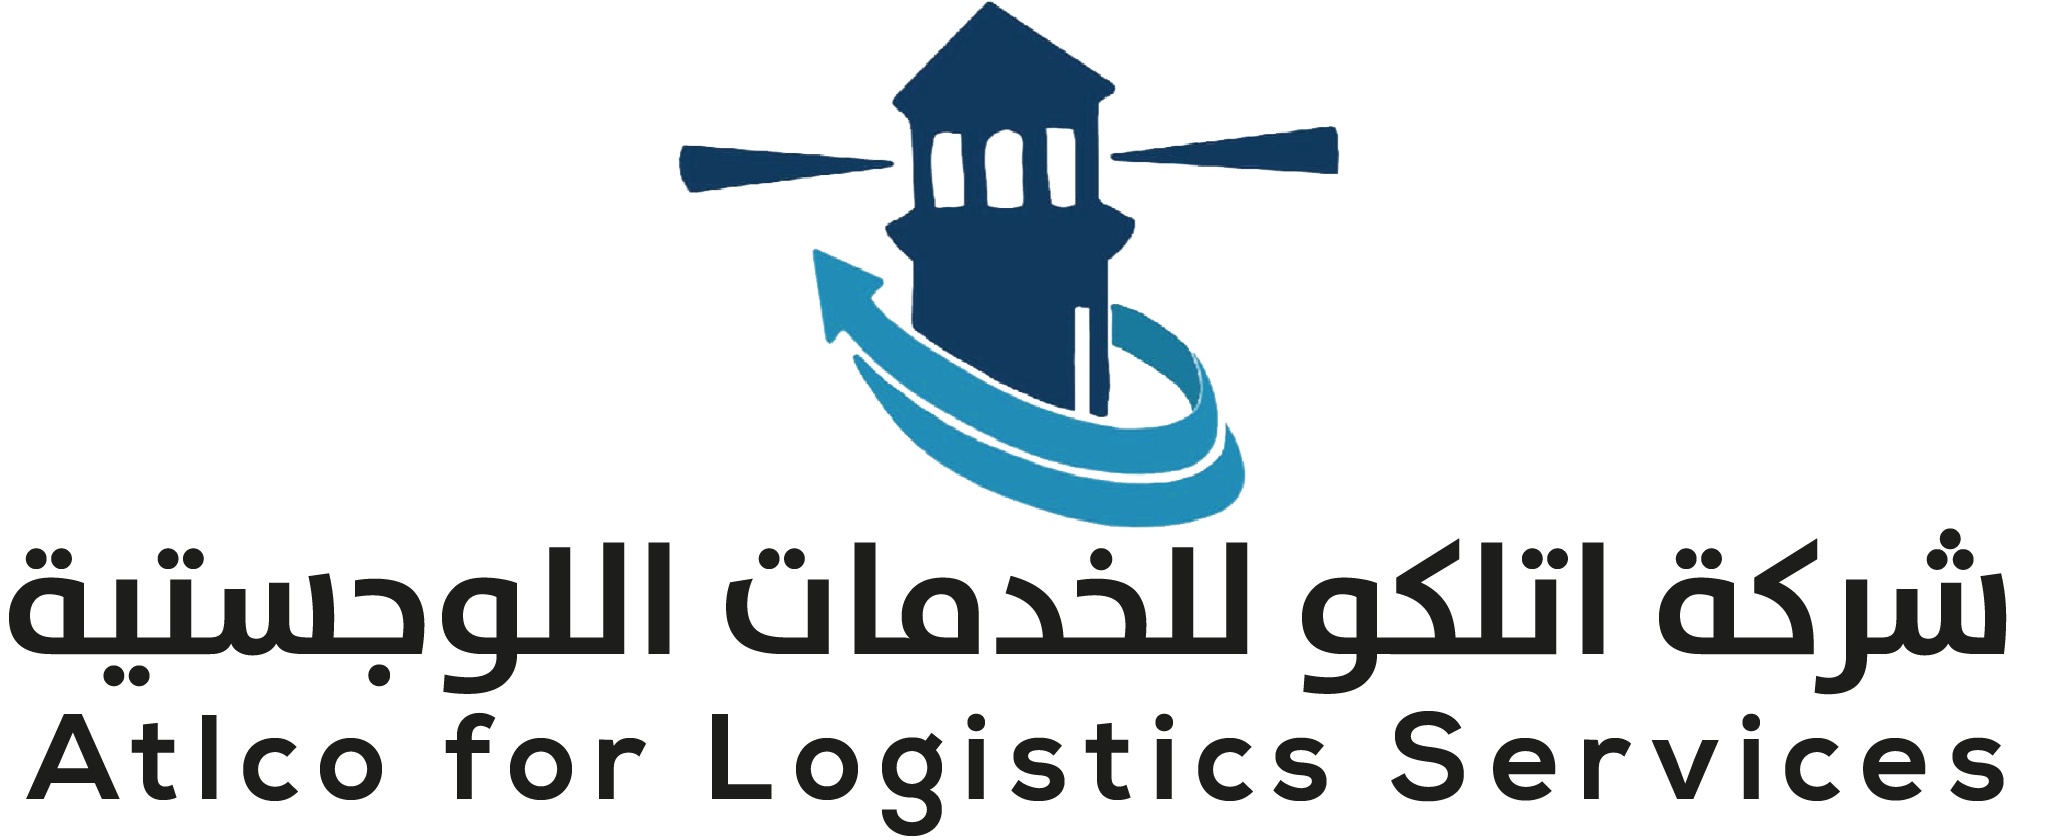 Atlco for Logistics Services